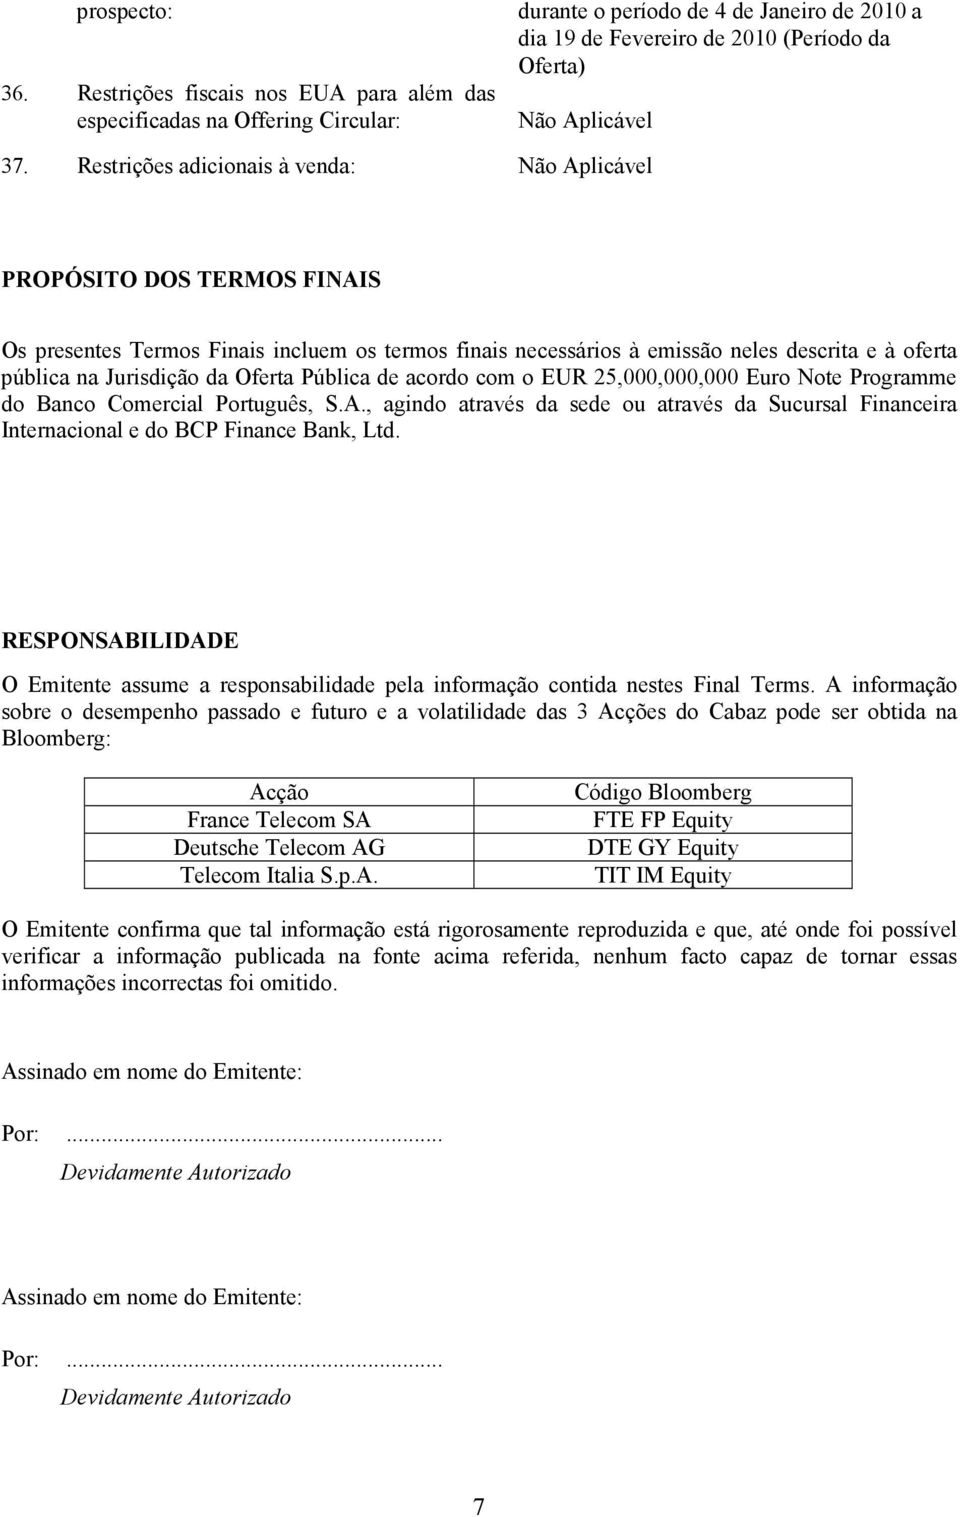 de acordo com o EUR 25,000,000,000 Euro Note Programme do Banco Comercial Português, S.A., agindo através da sede ou através da Sucursal Financeira Internacional e do BCP Finance Bank, Ltd.